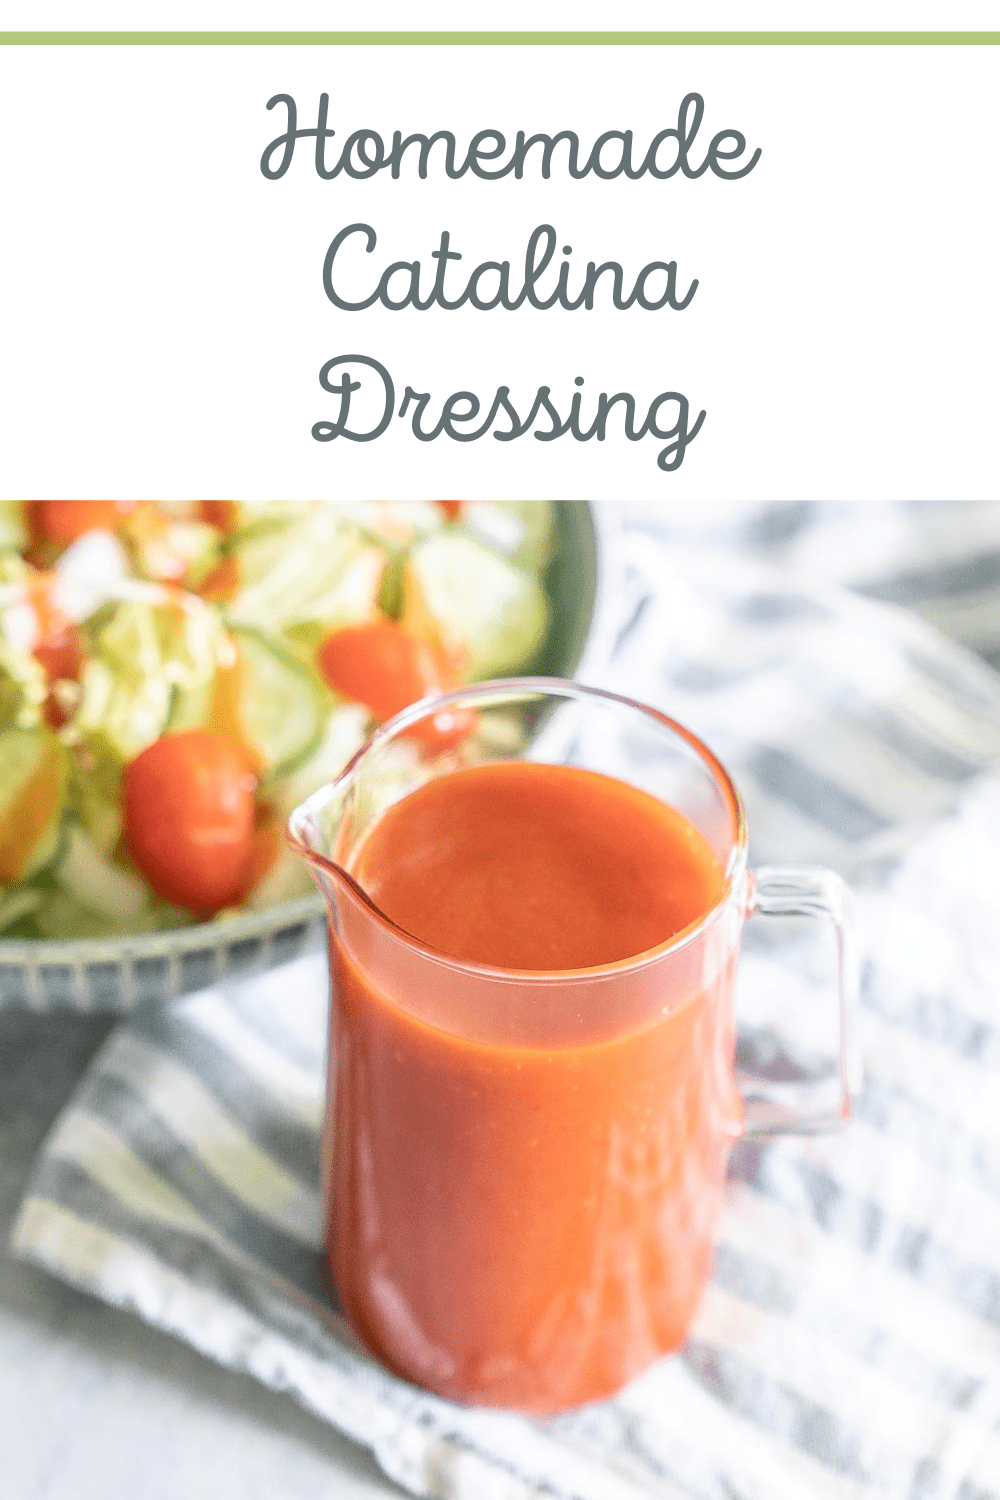 Homemade Catalina Dressing Recipe